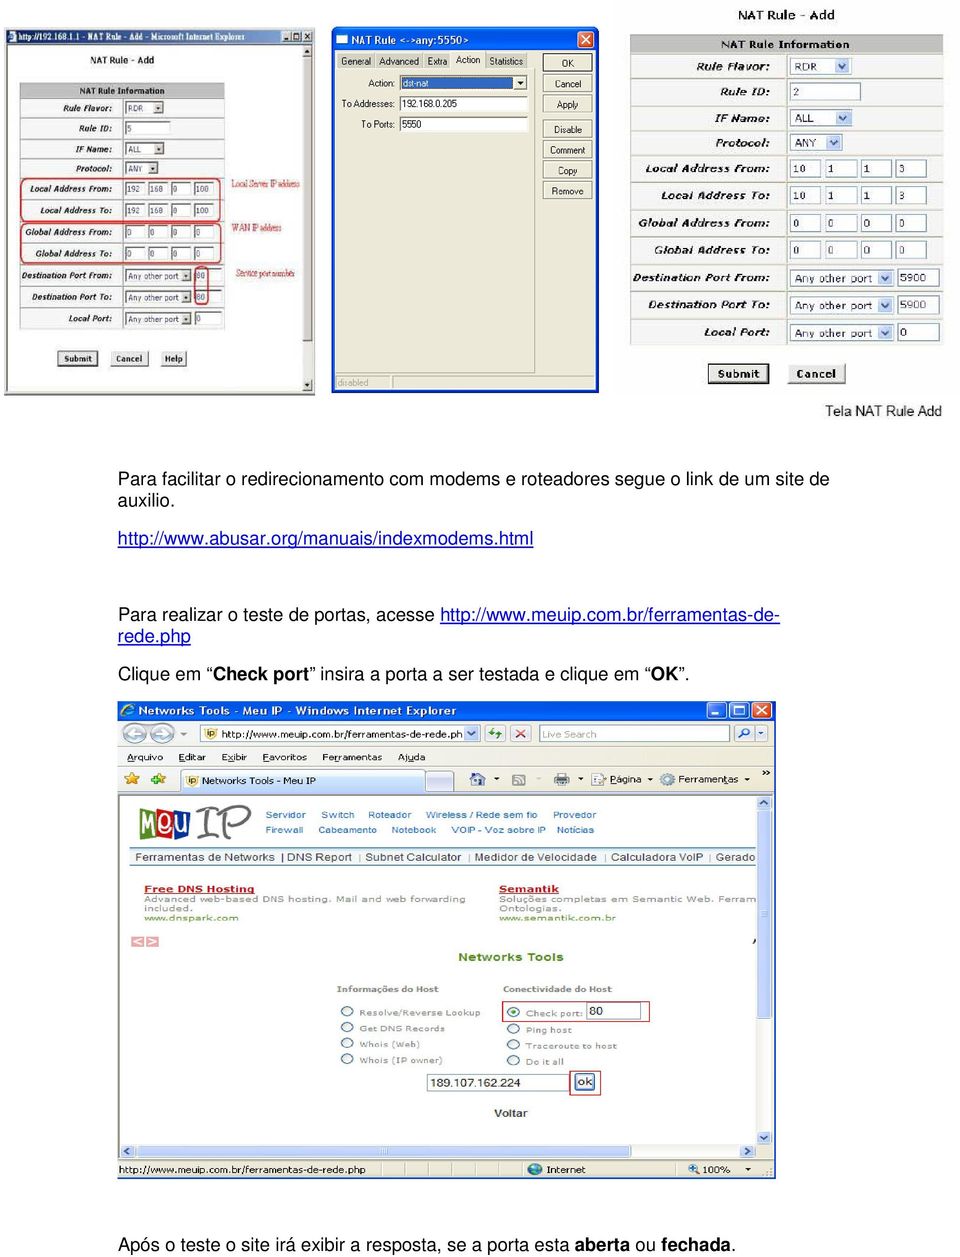 html Para realizar o teste de portas, acesse http://www.meuip.com.br/ferramentas-derede.